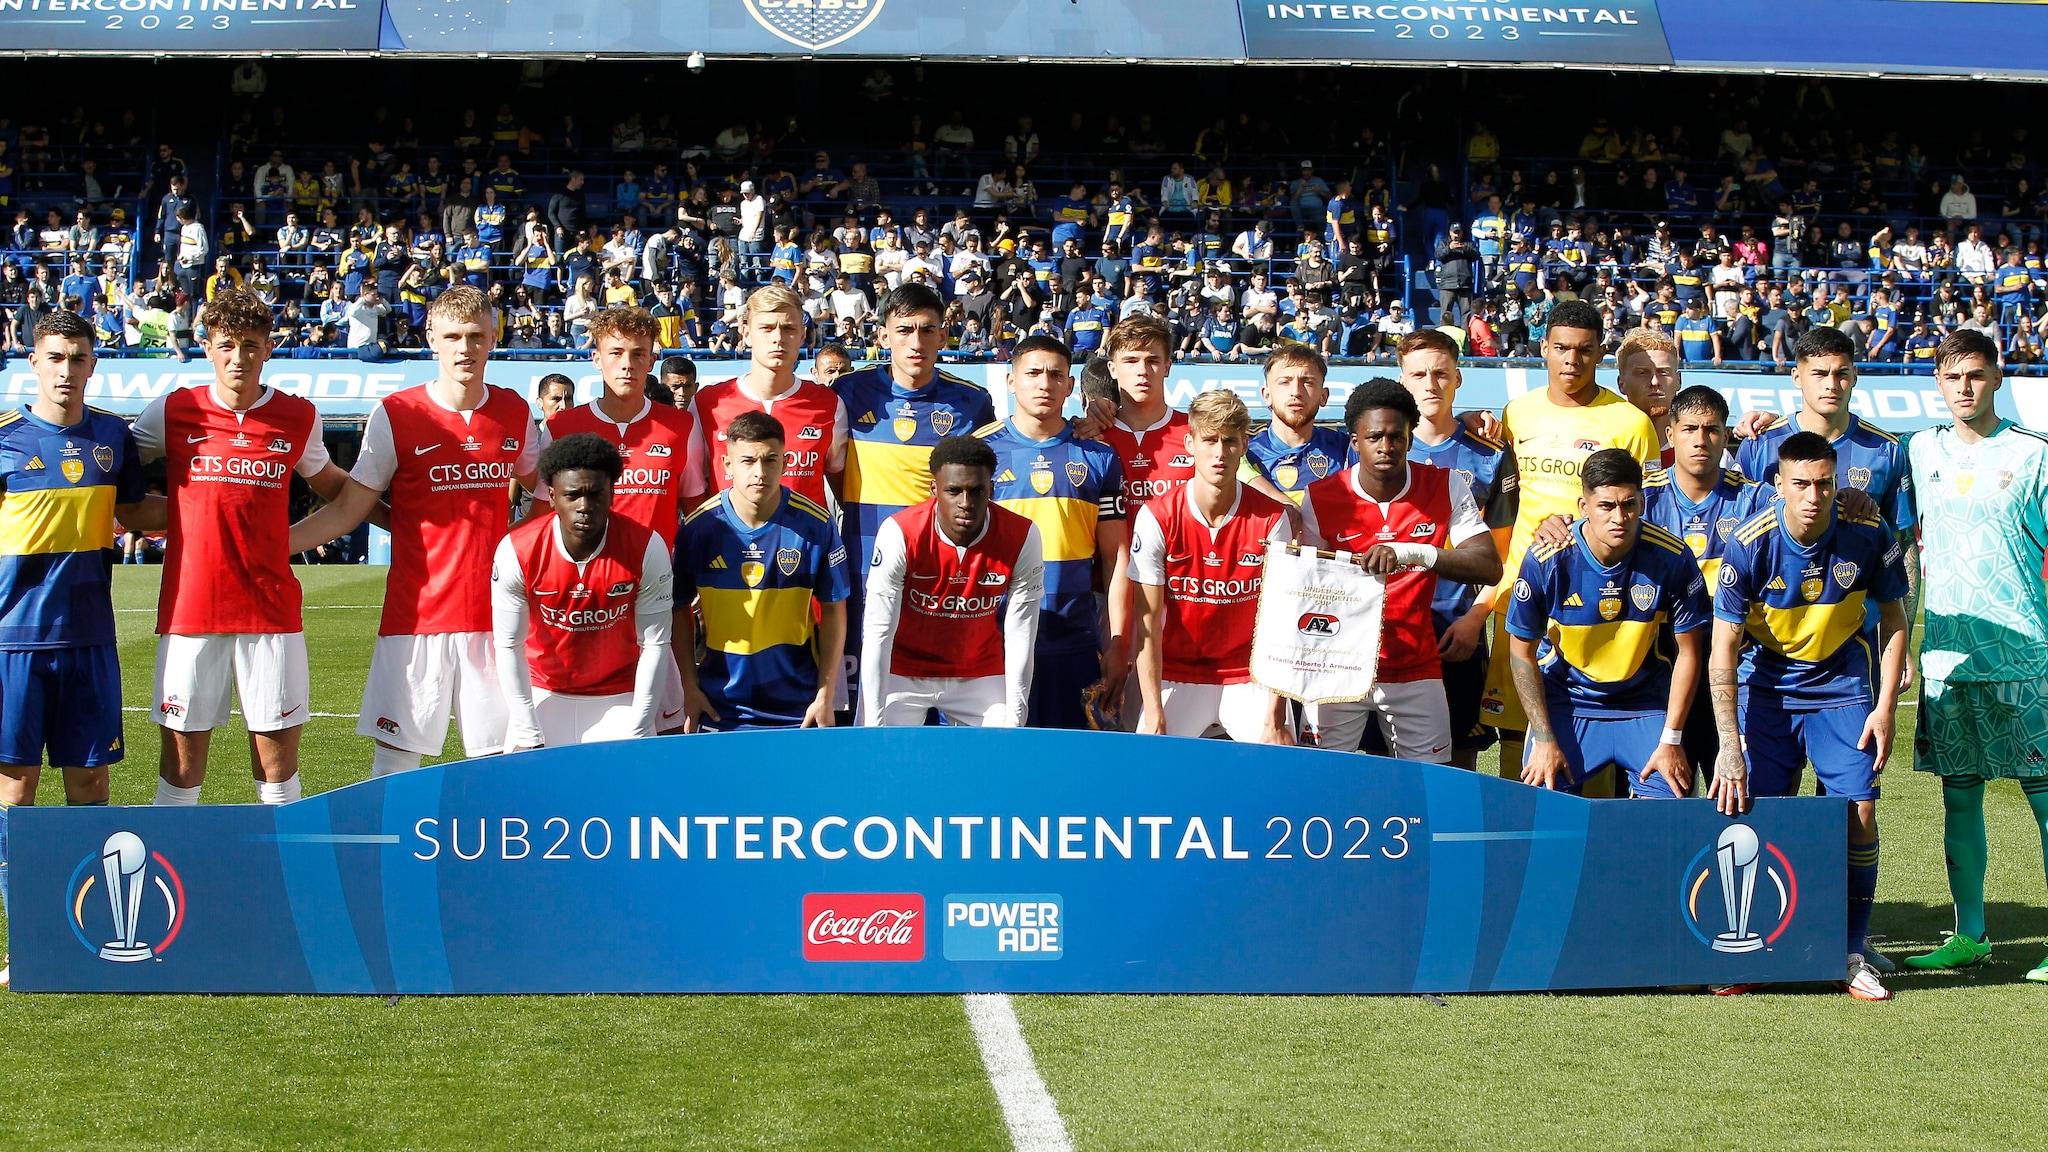 Mundiais sub-20 e sub-17 da Fifa são transferidos para 2023 por